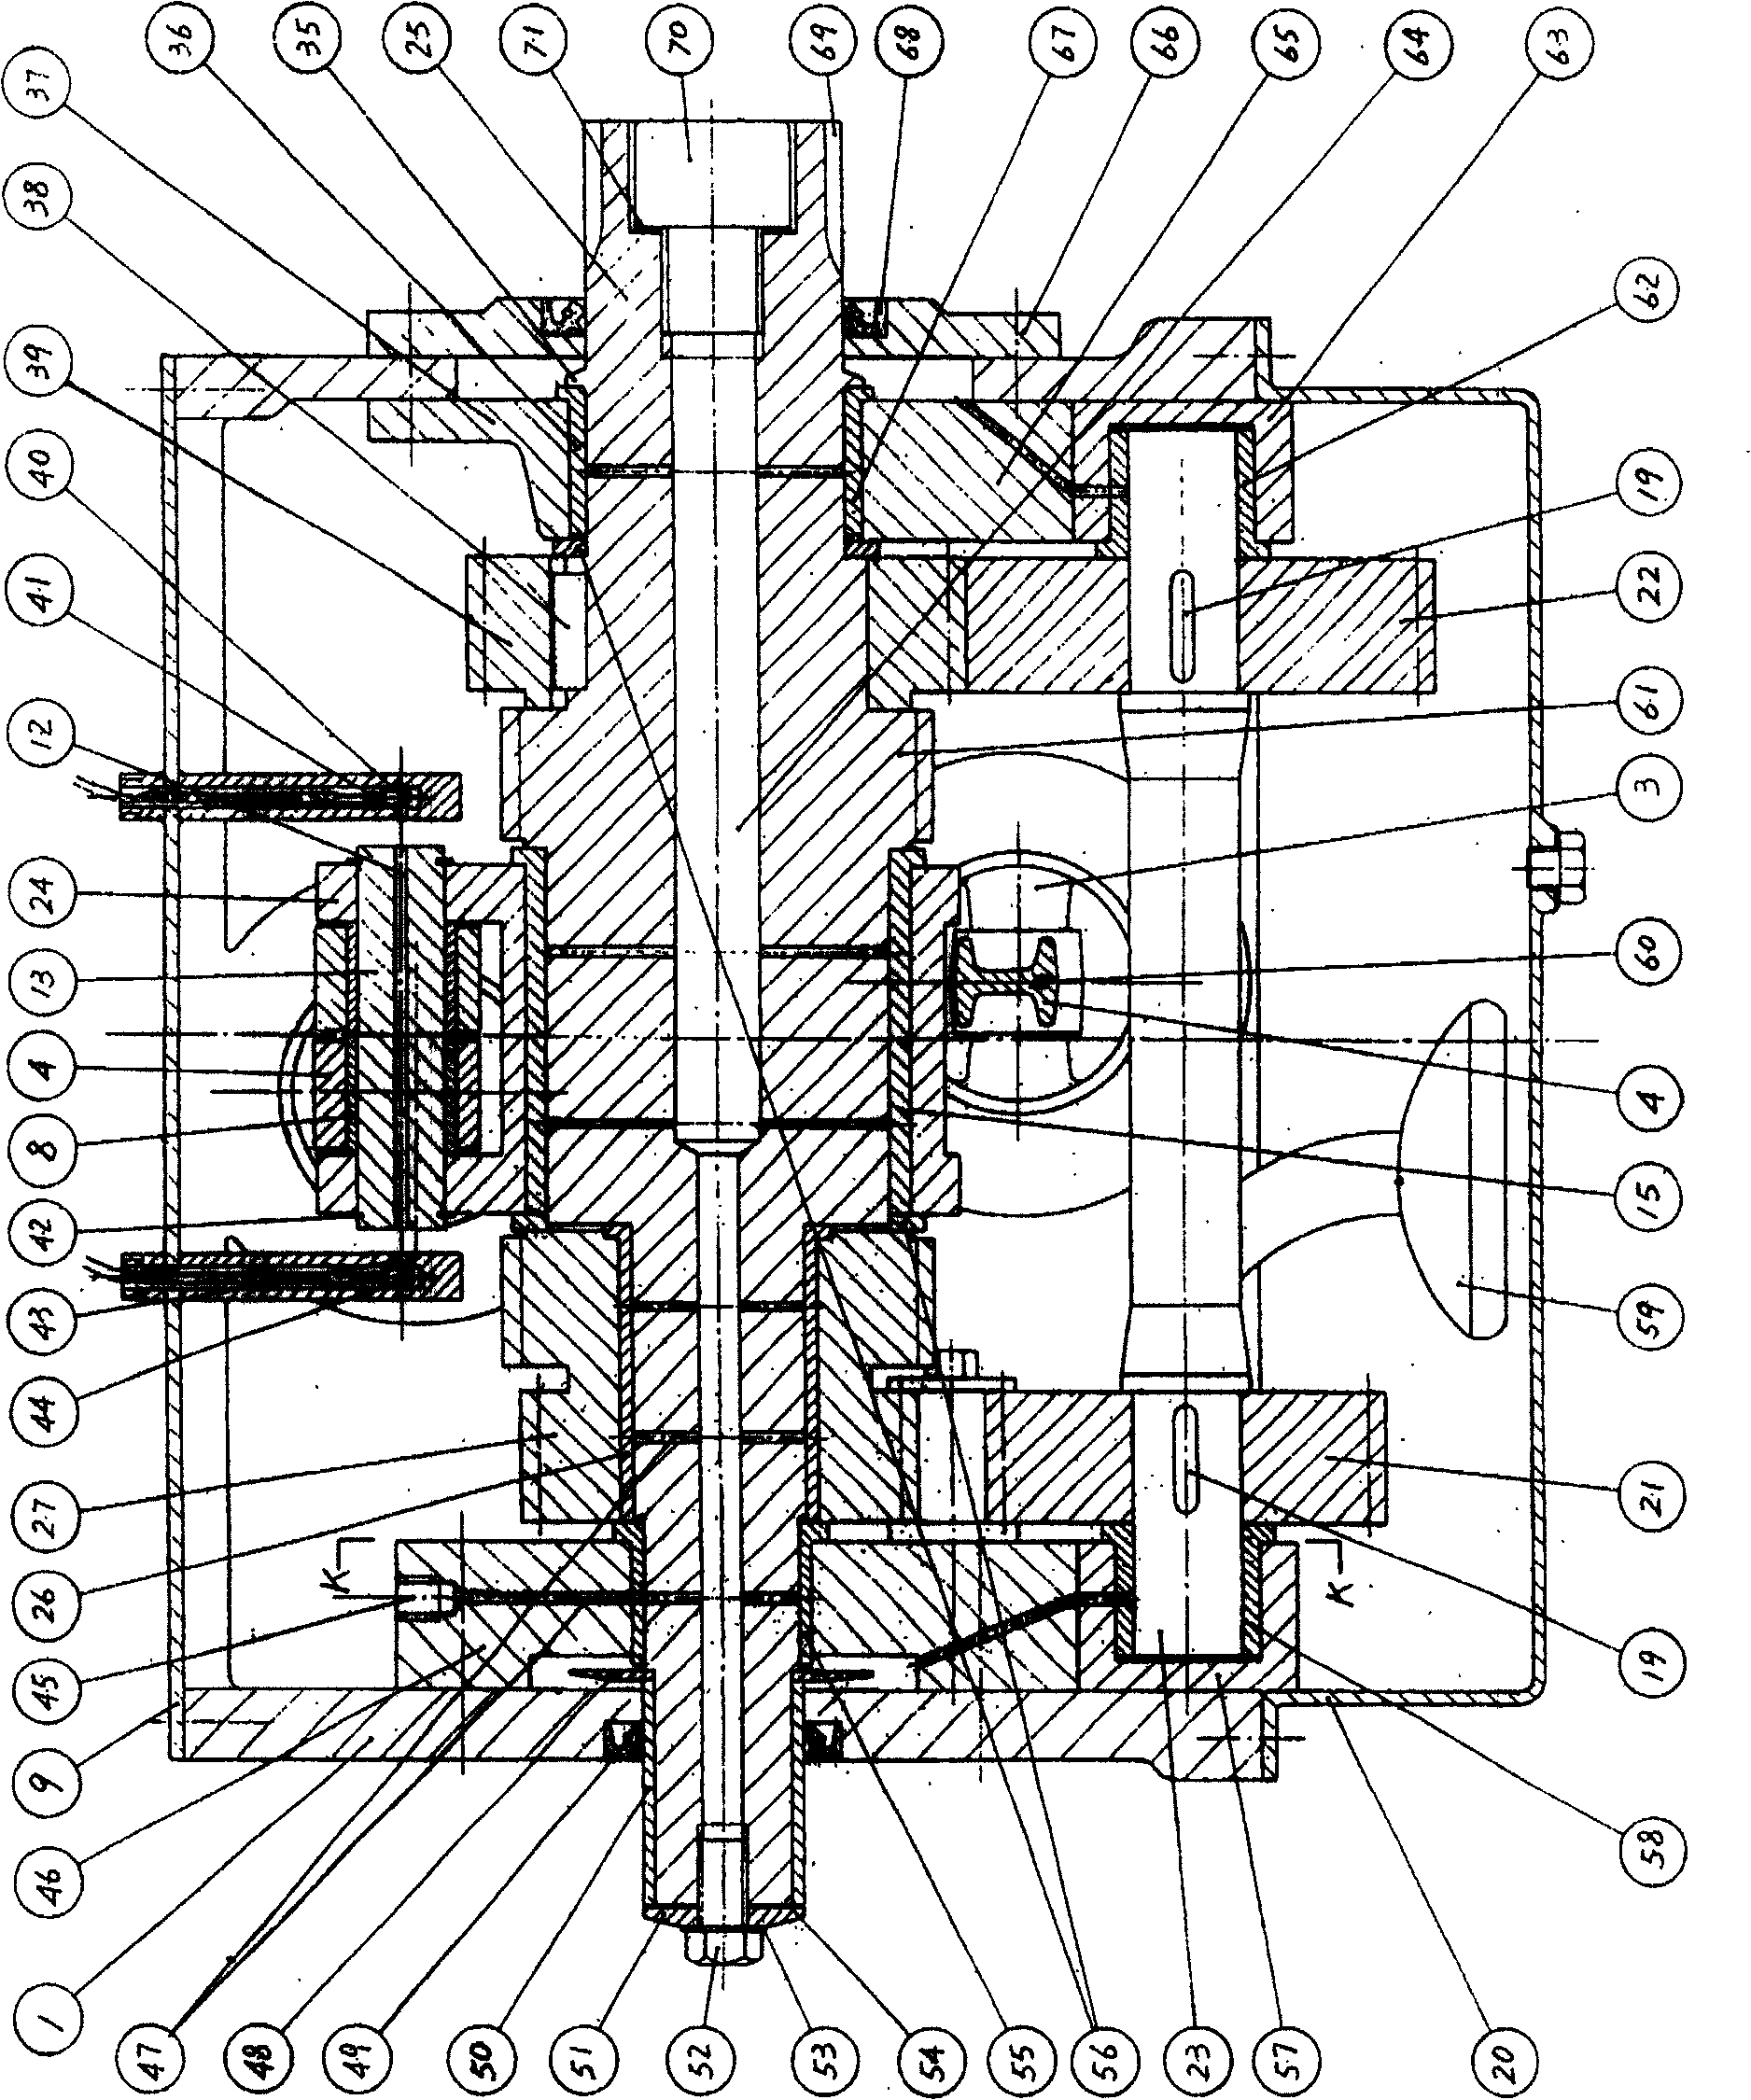 Toggle-type ratchet transmission of crank-shaft engine